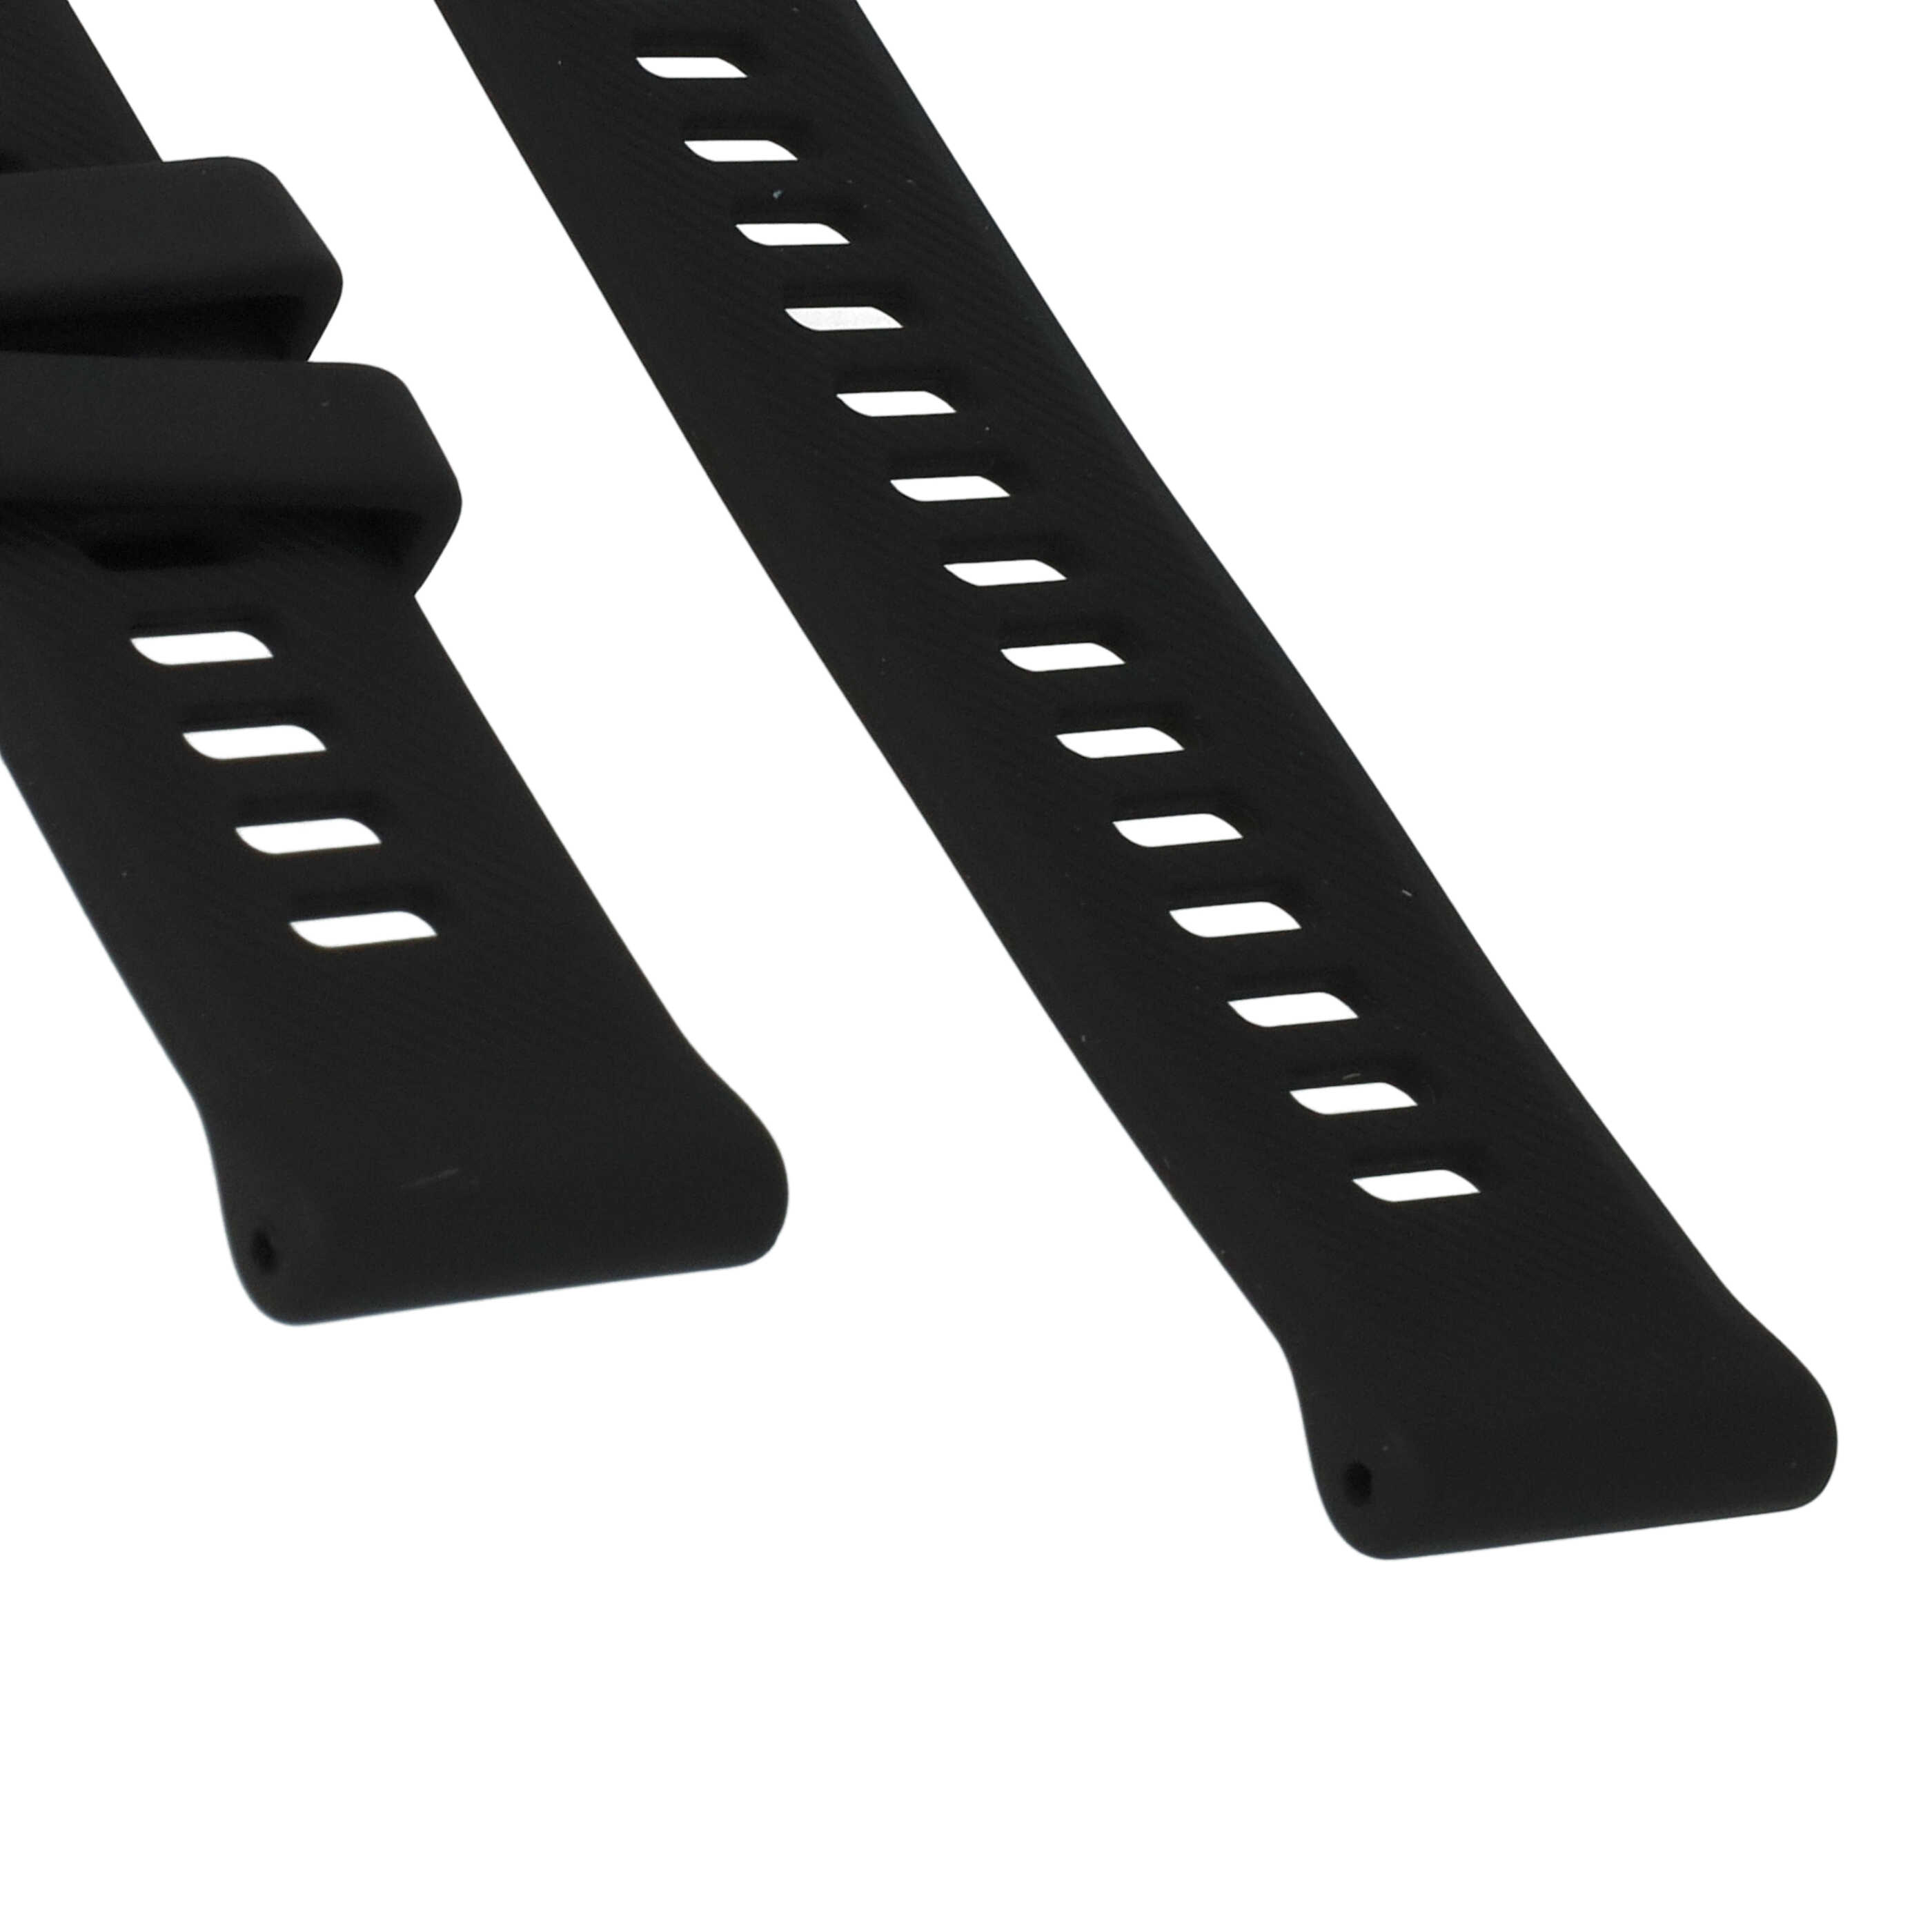 Bracelet pour montre intelligente Garmin Forerunner - 9 + 12,2 cm de long, 22mm de large, silicone, noir